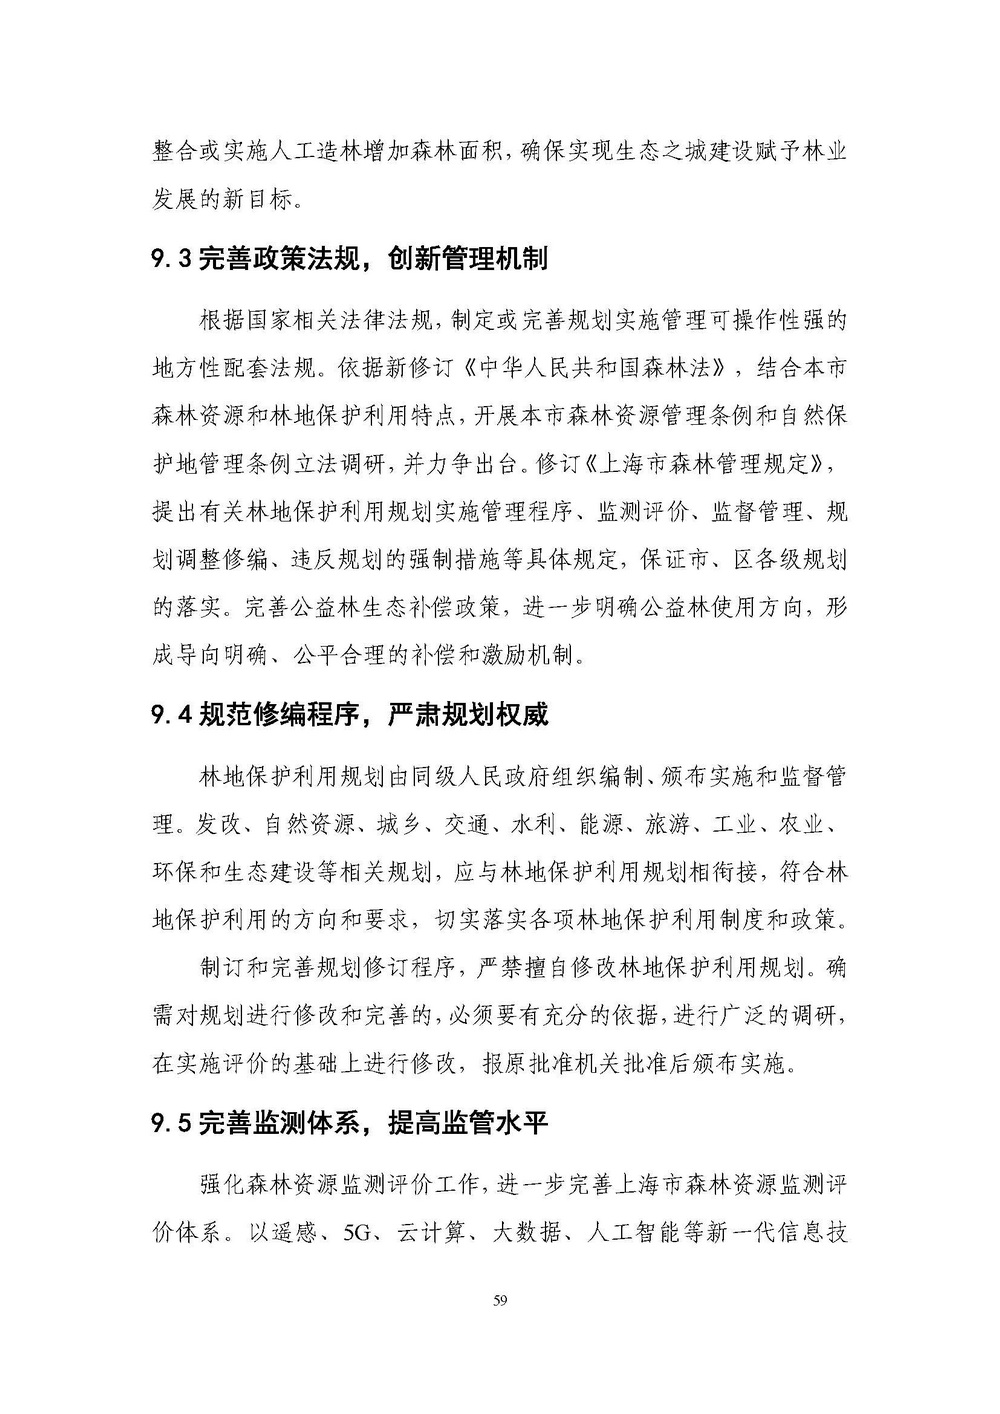 上海市森林和林地保护利用规划文本 公开稿 附图_页面_62.jpg